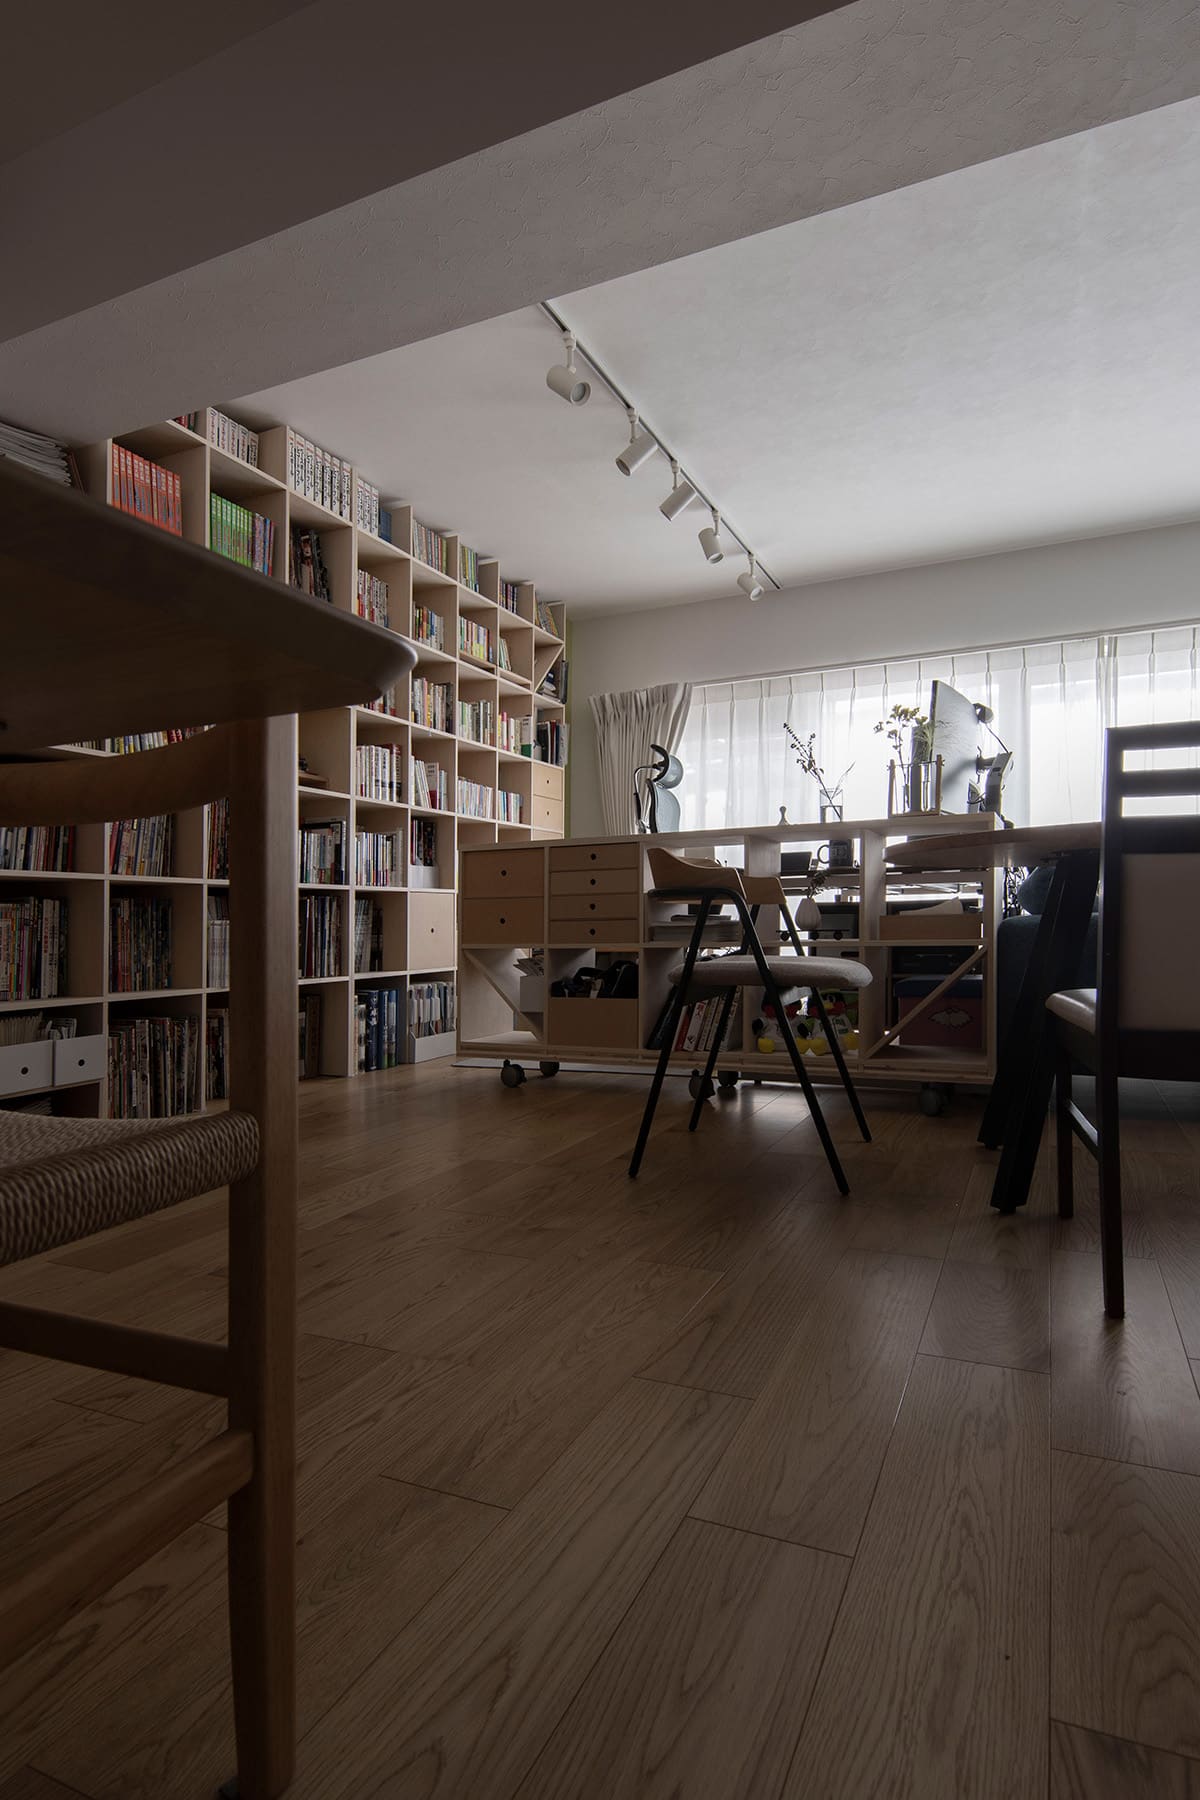 【File 816】大きなリビングにご夫婦それぞれの書斎を設ける - Shelf 壁一面の本棚奥行250mm - マルゲリータお客様事例